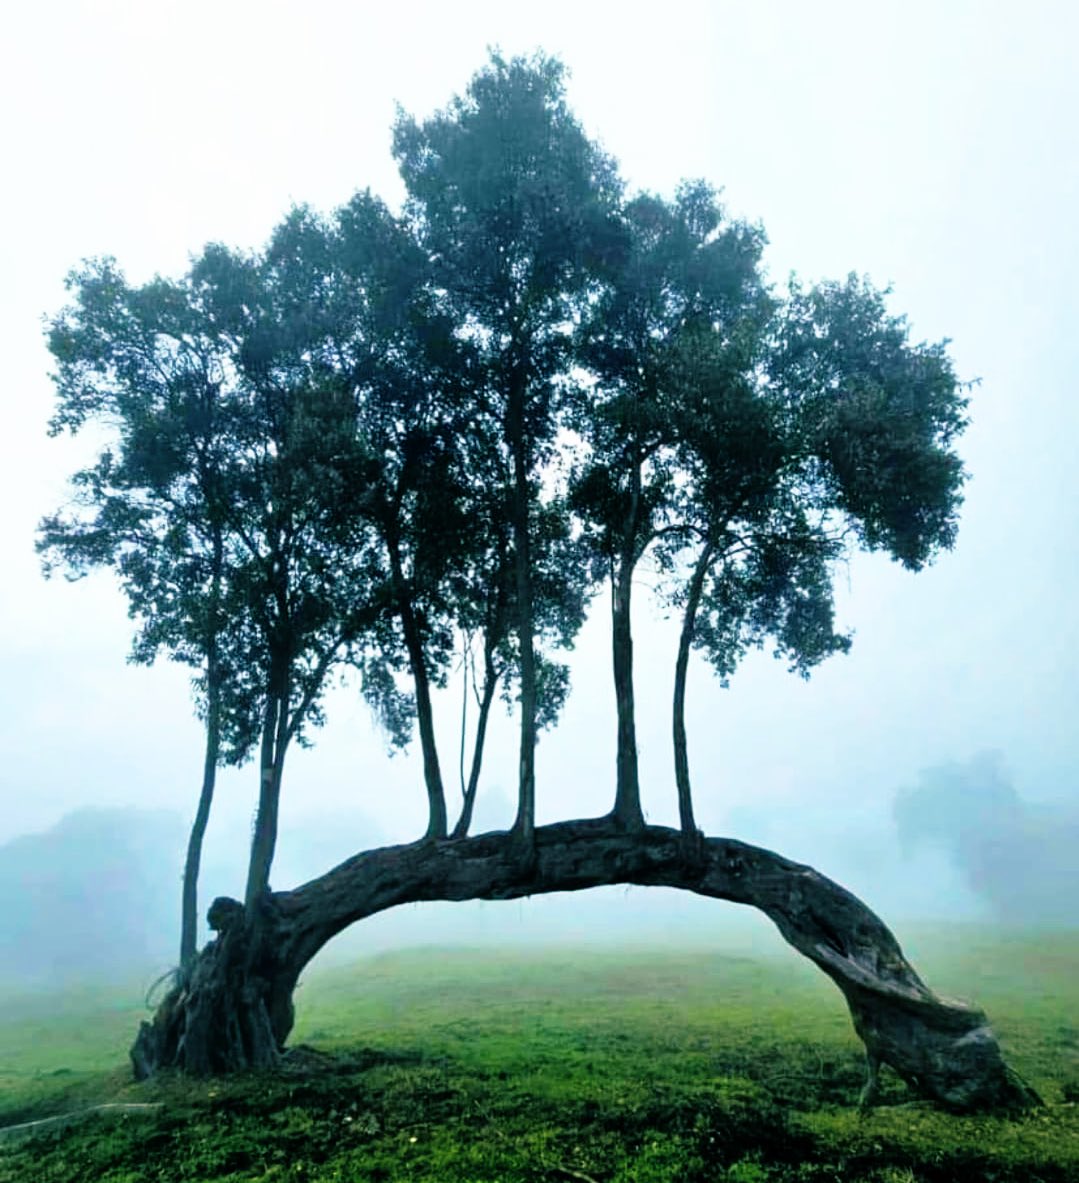 Los árboles, seres vivos con ansias de vida.. Sin ellos nuestro planeta sería inhabitable. Feliz #DiadeLaTierra !